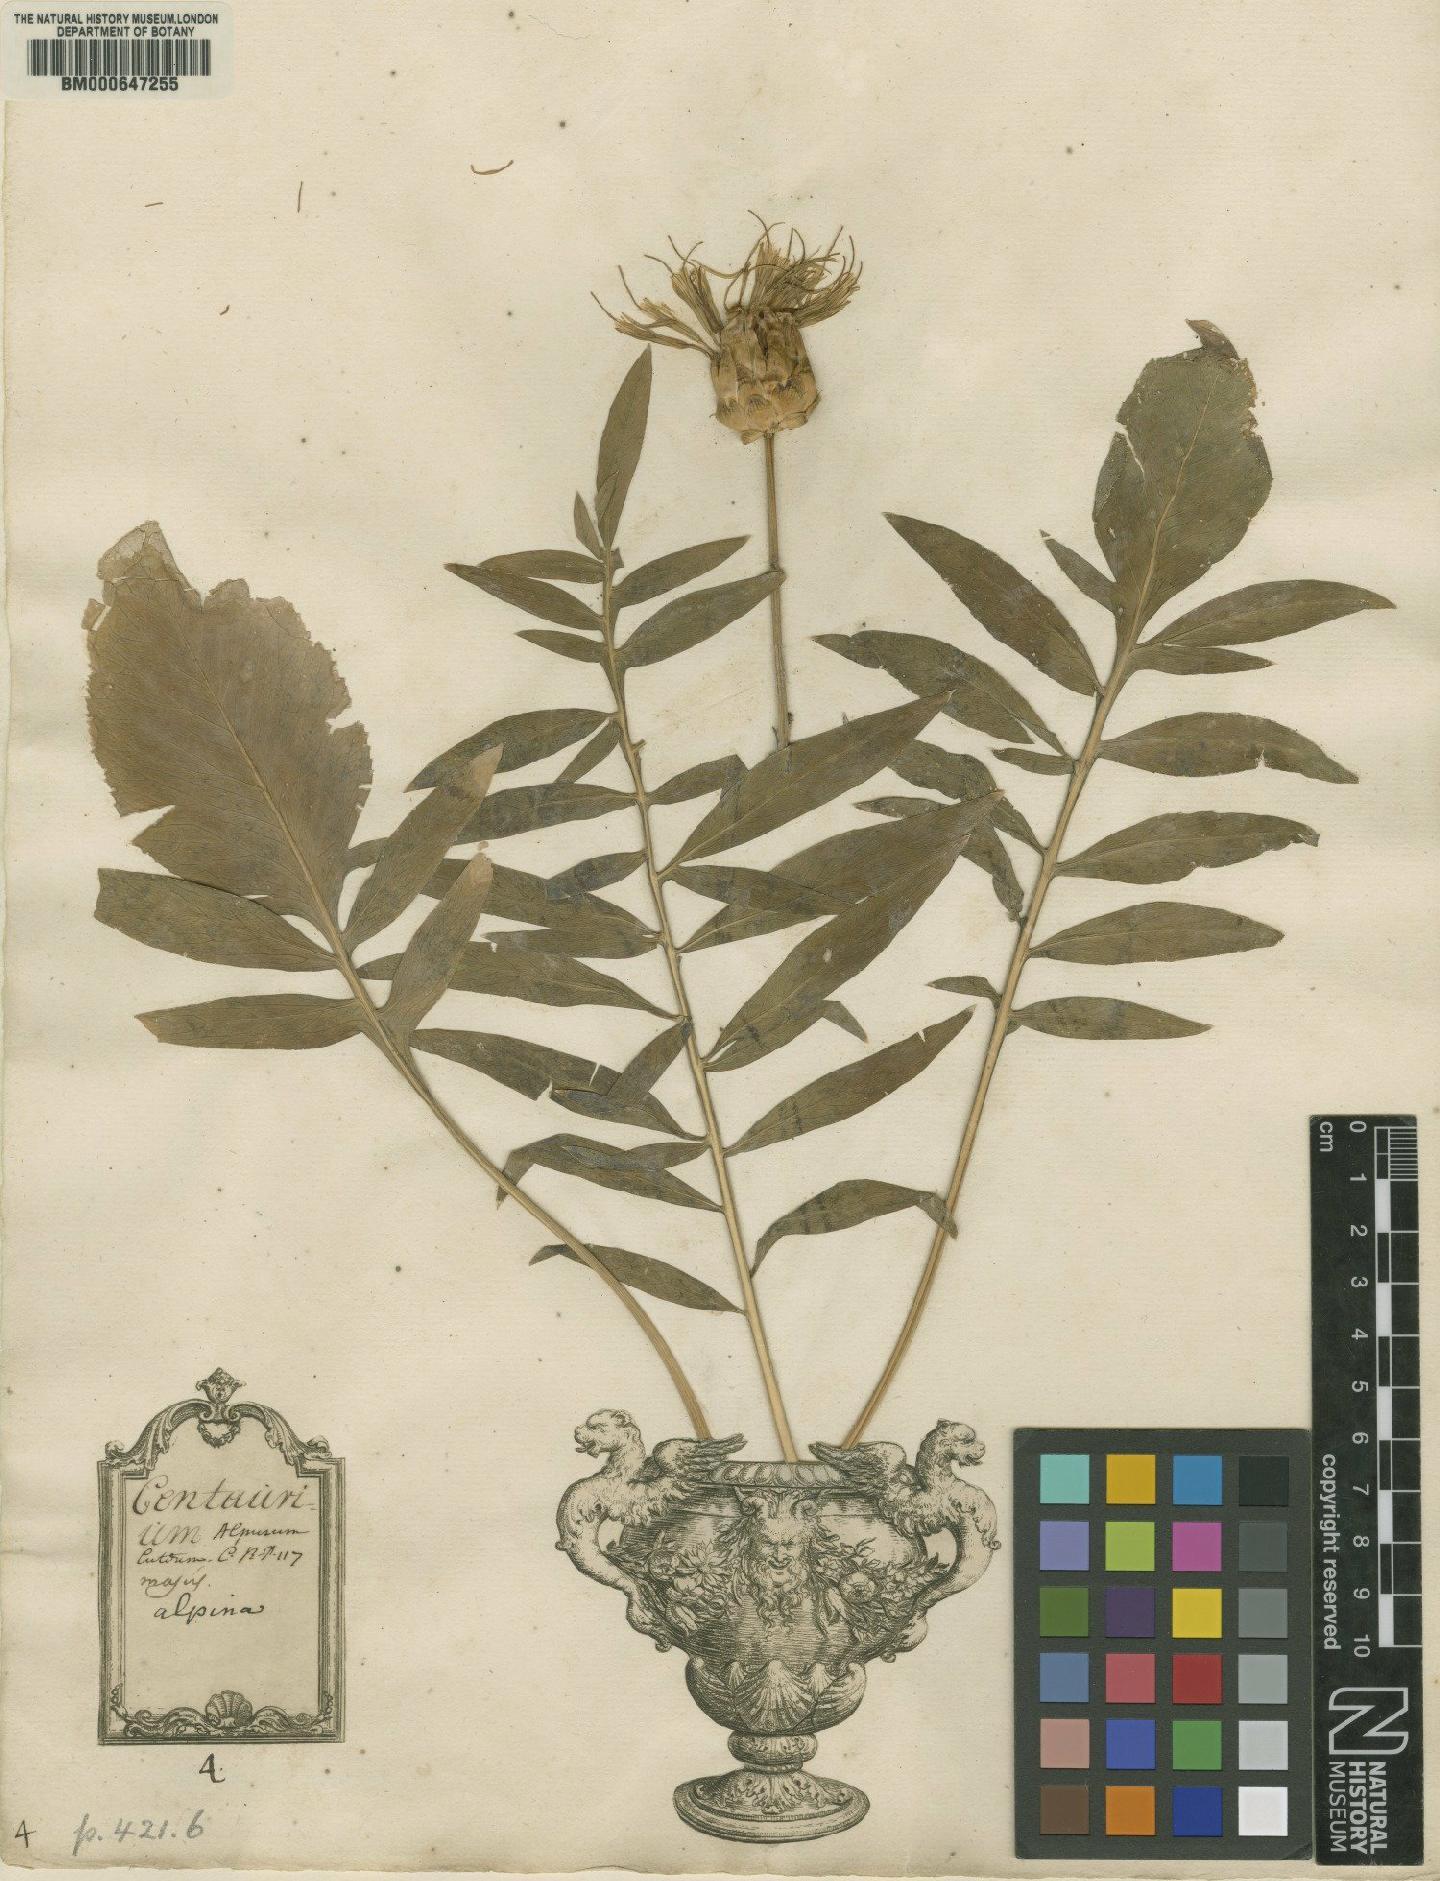 To NHMUK collection (Centaurea alpina L.; Original material; NHMUK:ecatalogue:4702961)